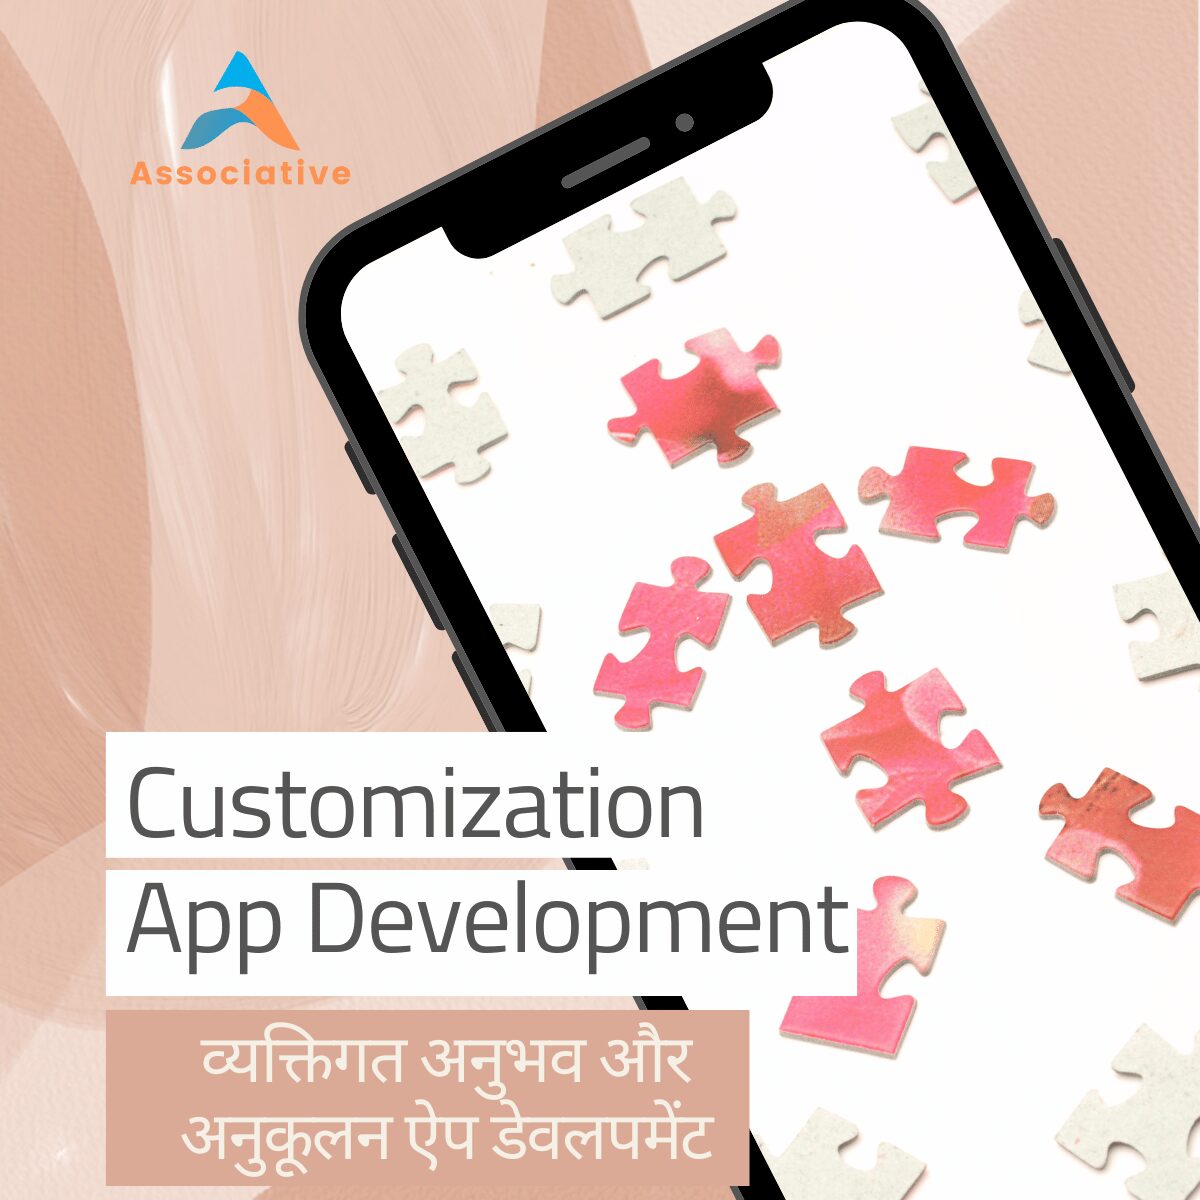 Personalization and Customization App Development व्यक्तिगत अनुभव और अनुकूलन ऐप डेवलपमेंट